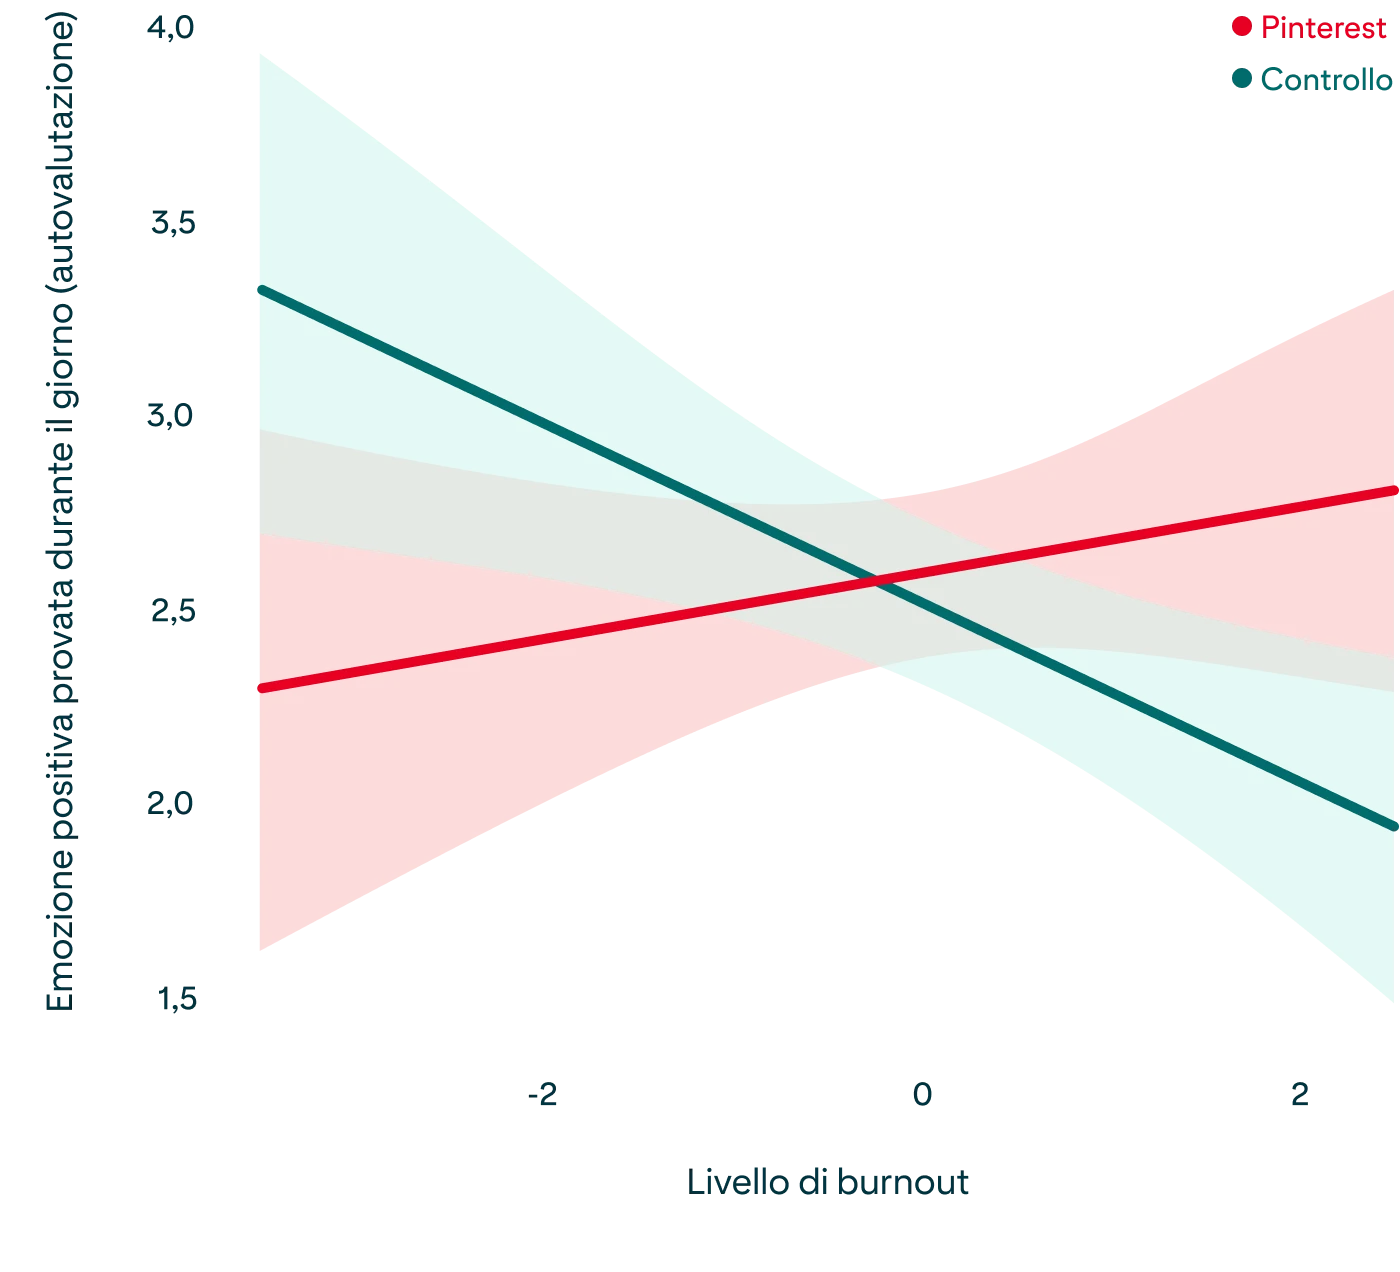  Grafico che mostra la relazione tra i livelli di burnout e le emozioni positive oggetto di autovalutazione, come descritto nel paragrafo precedente 